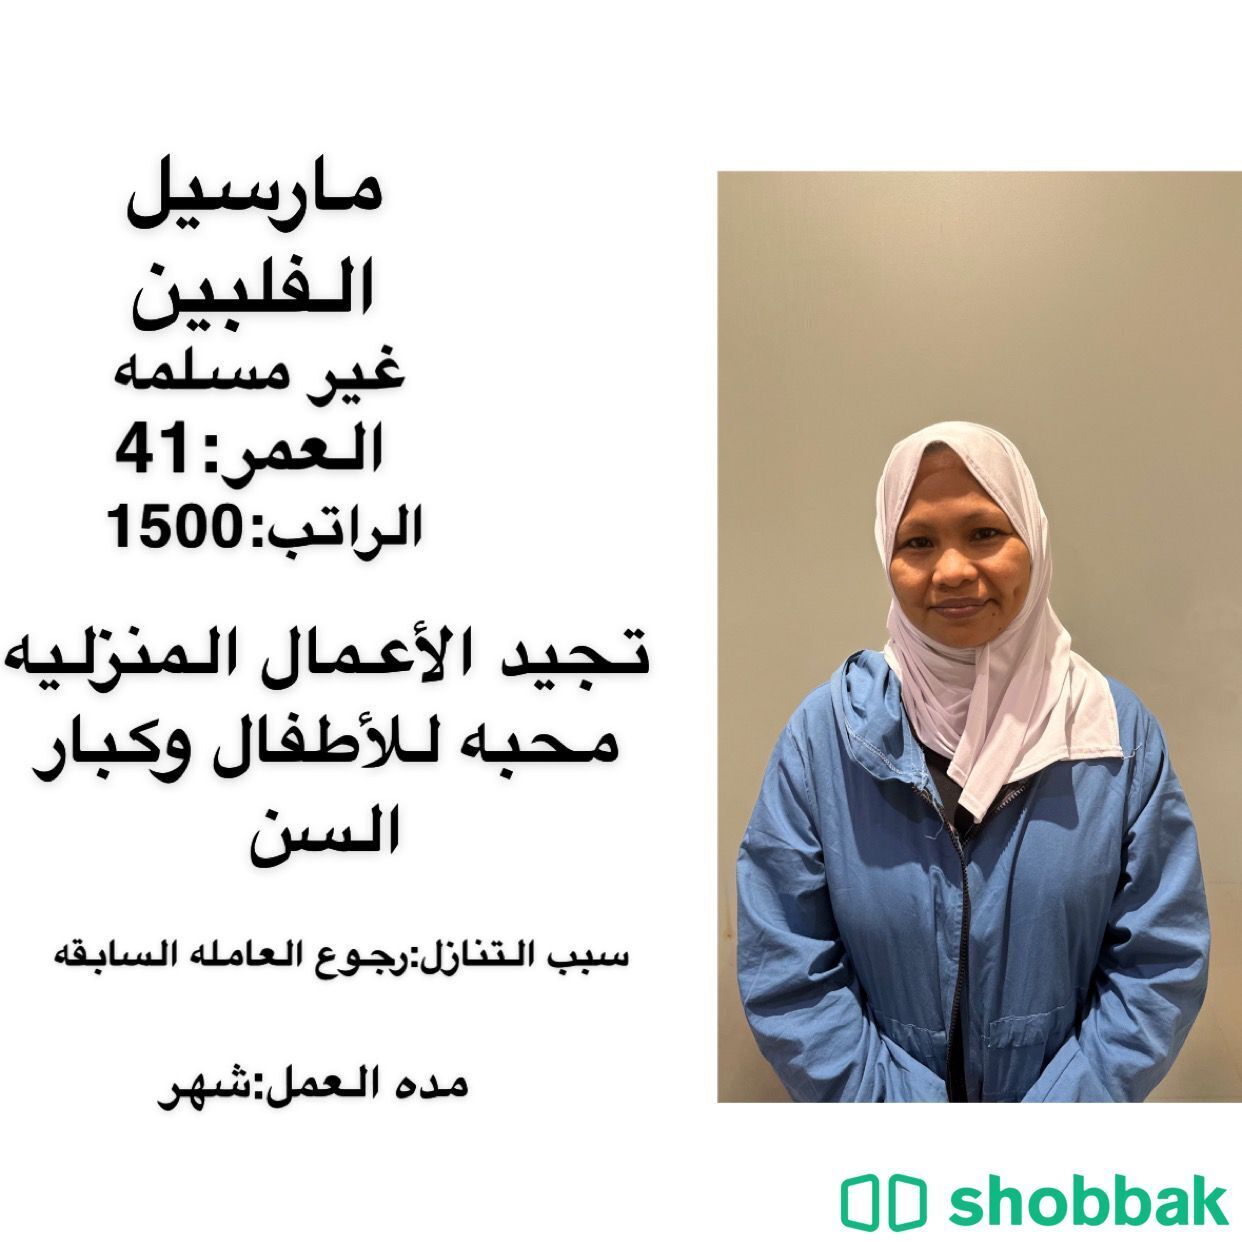 يوجد لدينا عاملات مدربات ع الاعمال المنزليه 0591052989 Shobbak Saudi Arabia